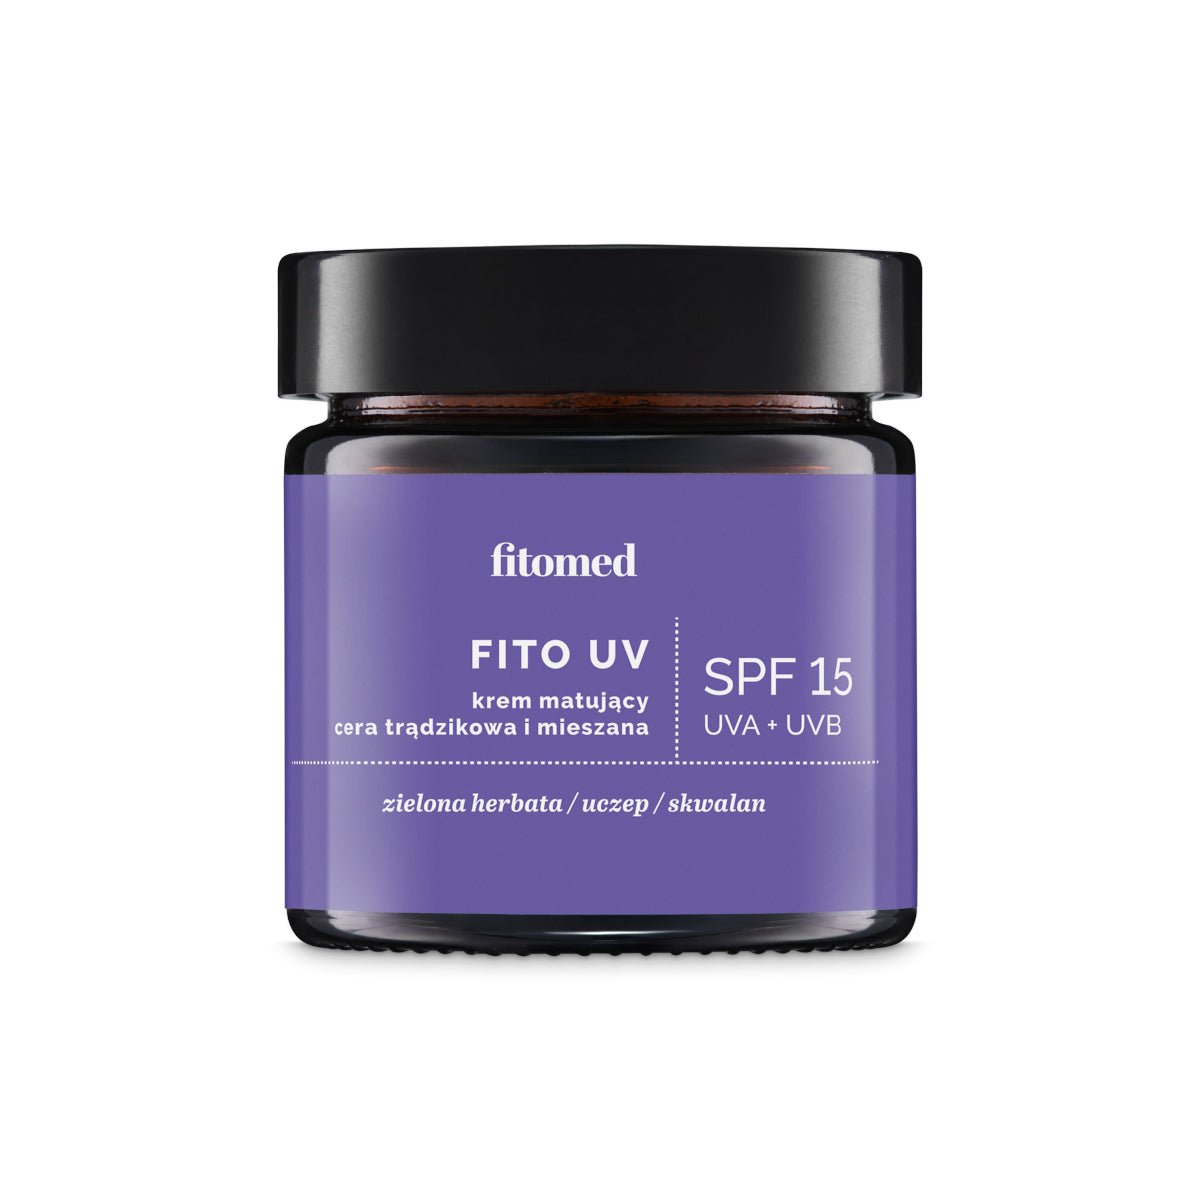 FITO UV crema matificante SPF15 para pieles acneicas y mixtas 50 ml FITOMED